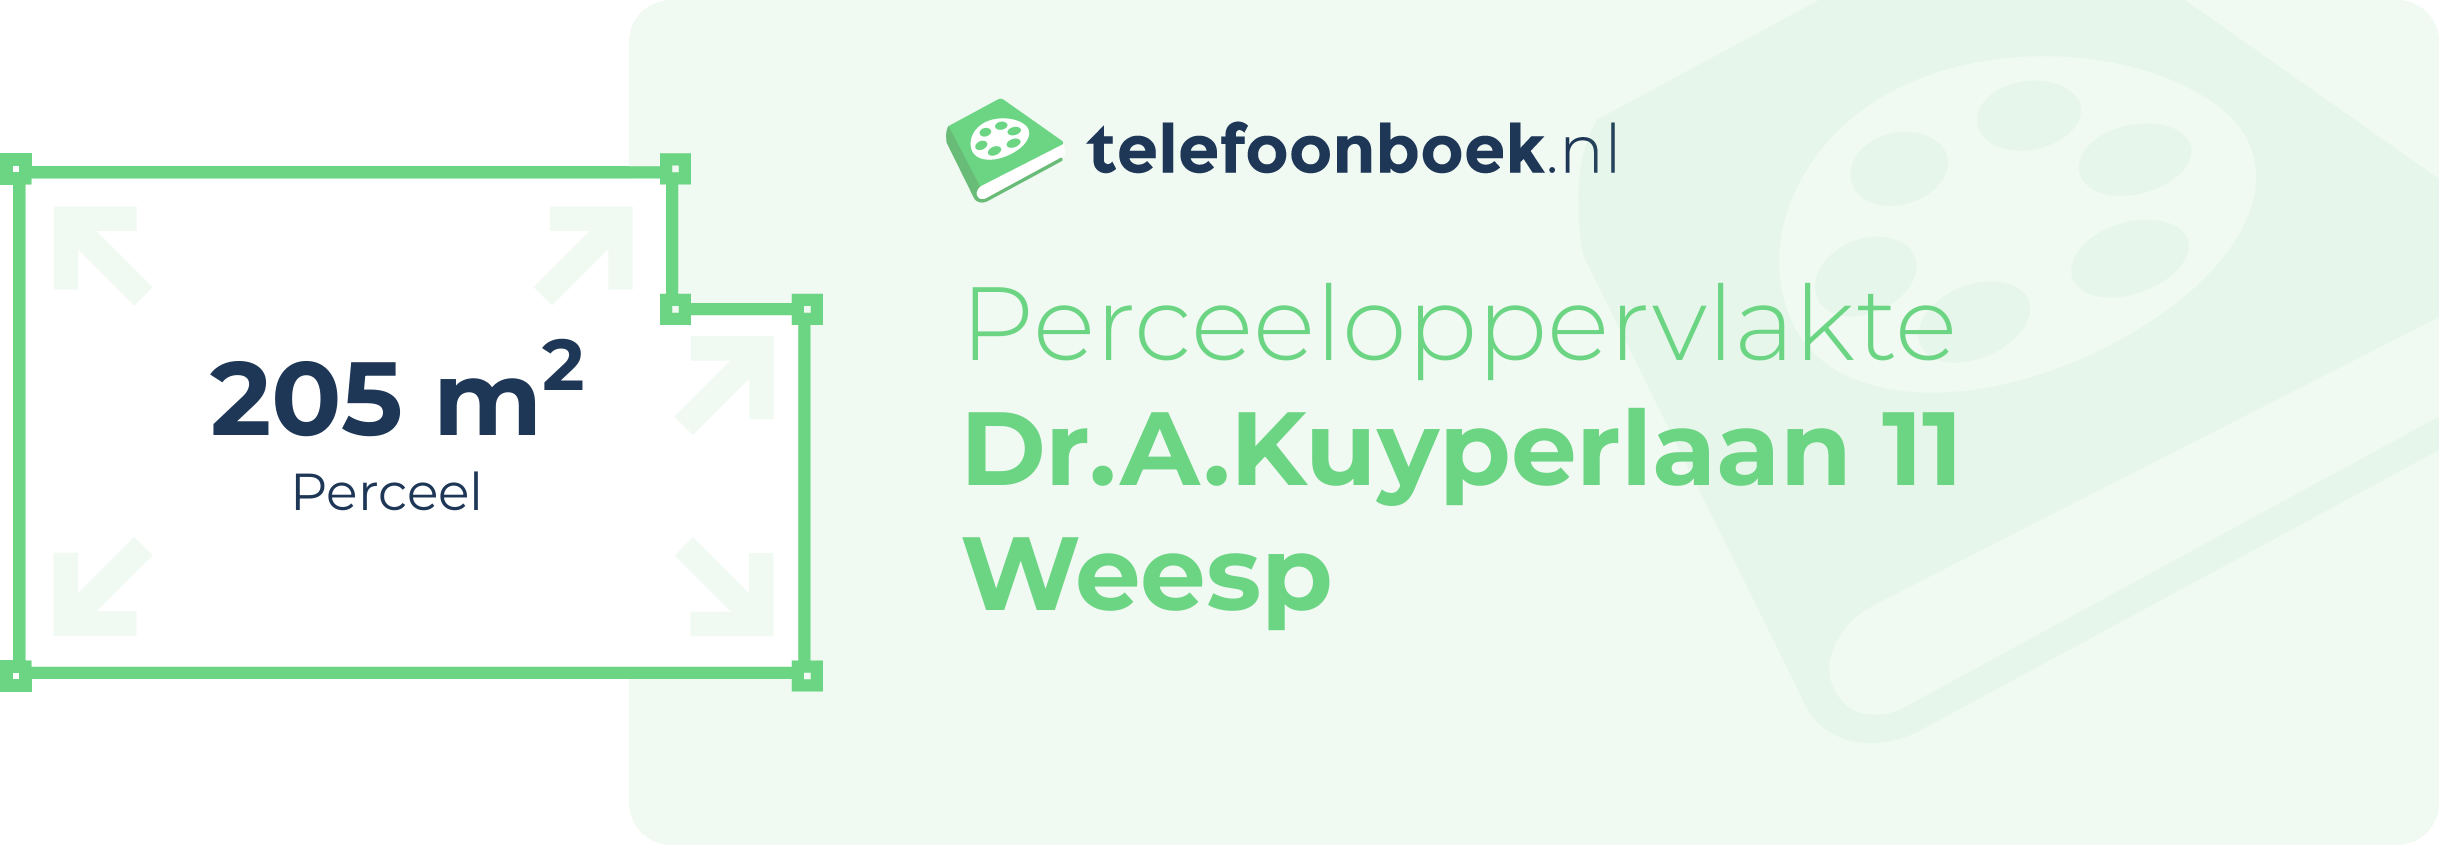 Perceeloppervlakte Dr.A.Kuyperlaan 11 Weesp